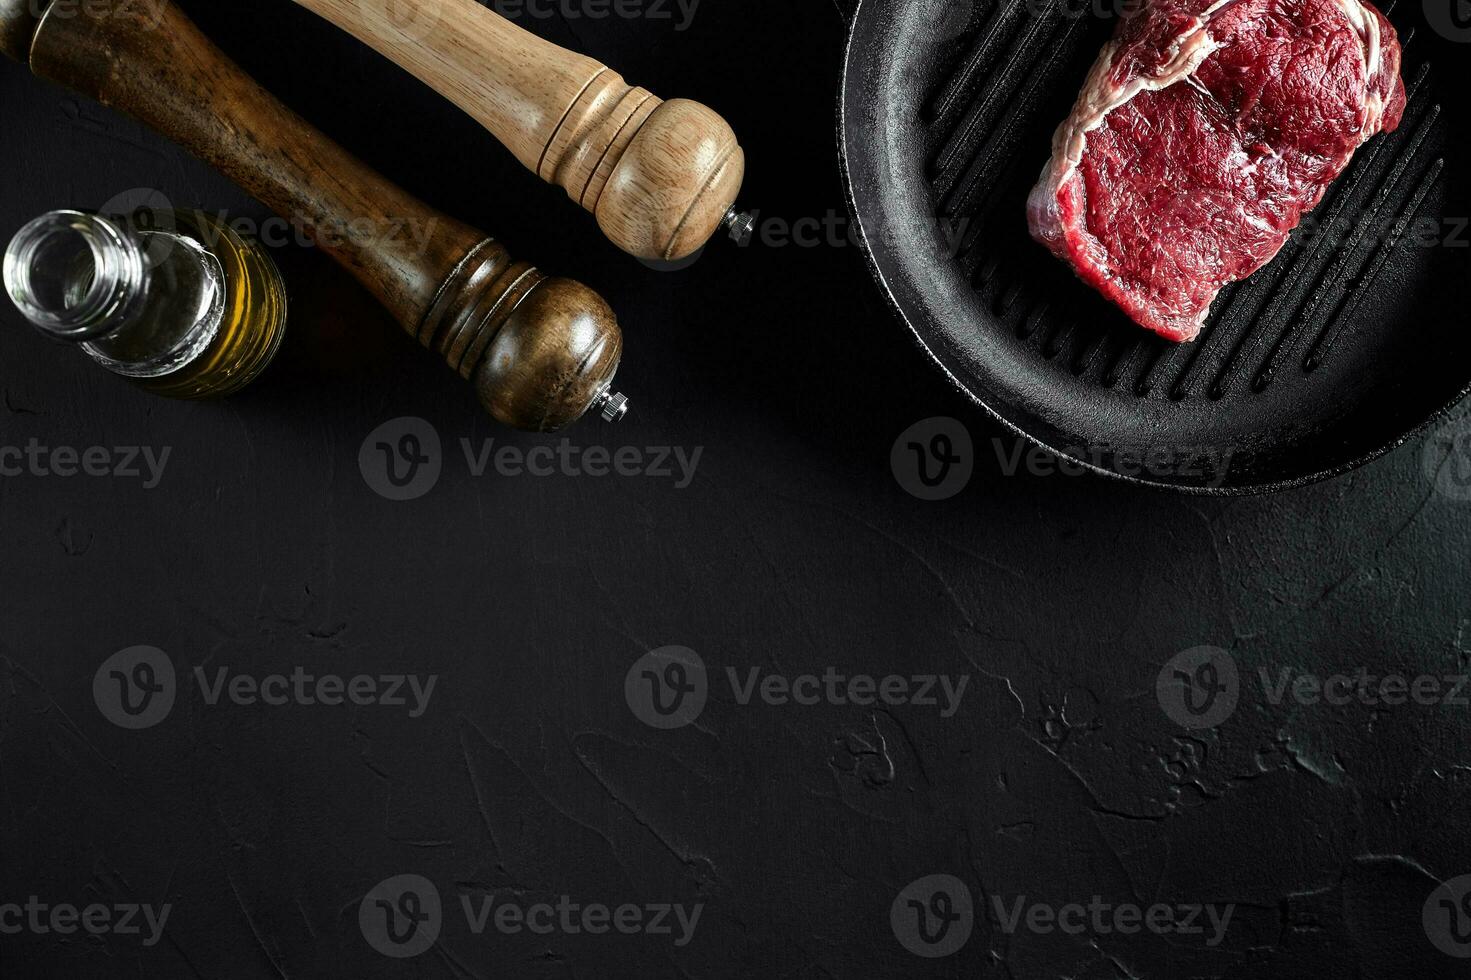 färsk rå kött. nötkött fläskkarré och marmorerad nötkött biffar på grill panorera och fräsning styrelse med krydda, svart bakgrund topp se. foto